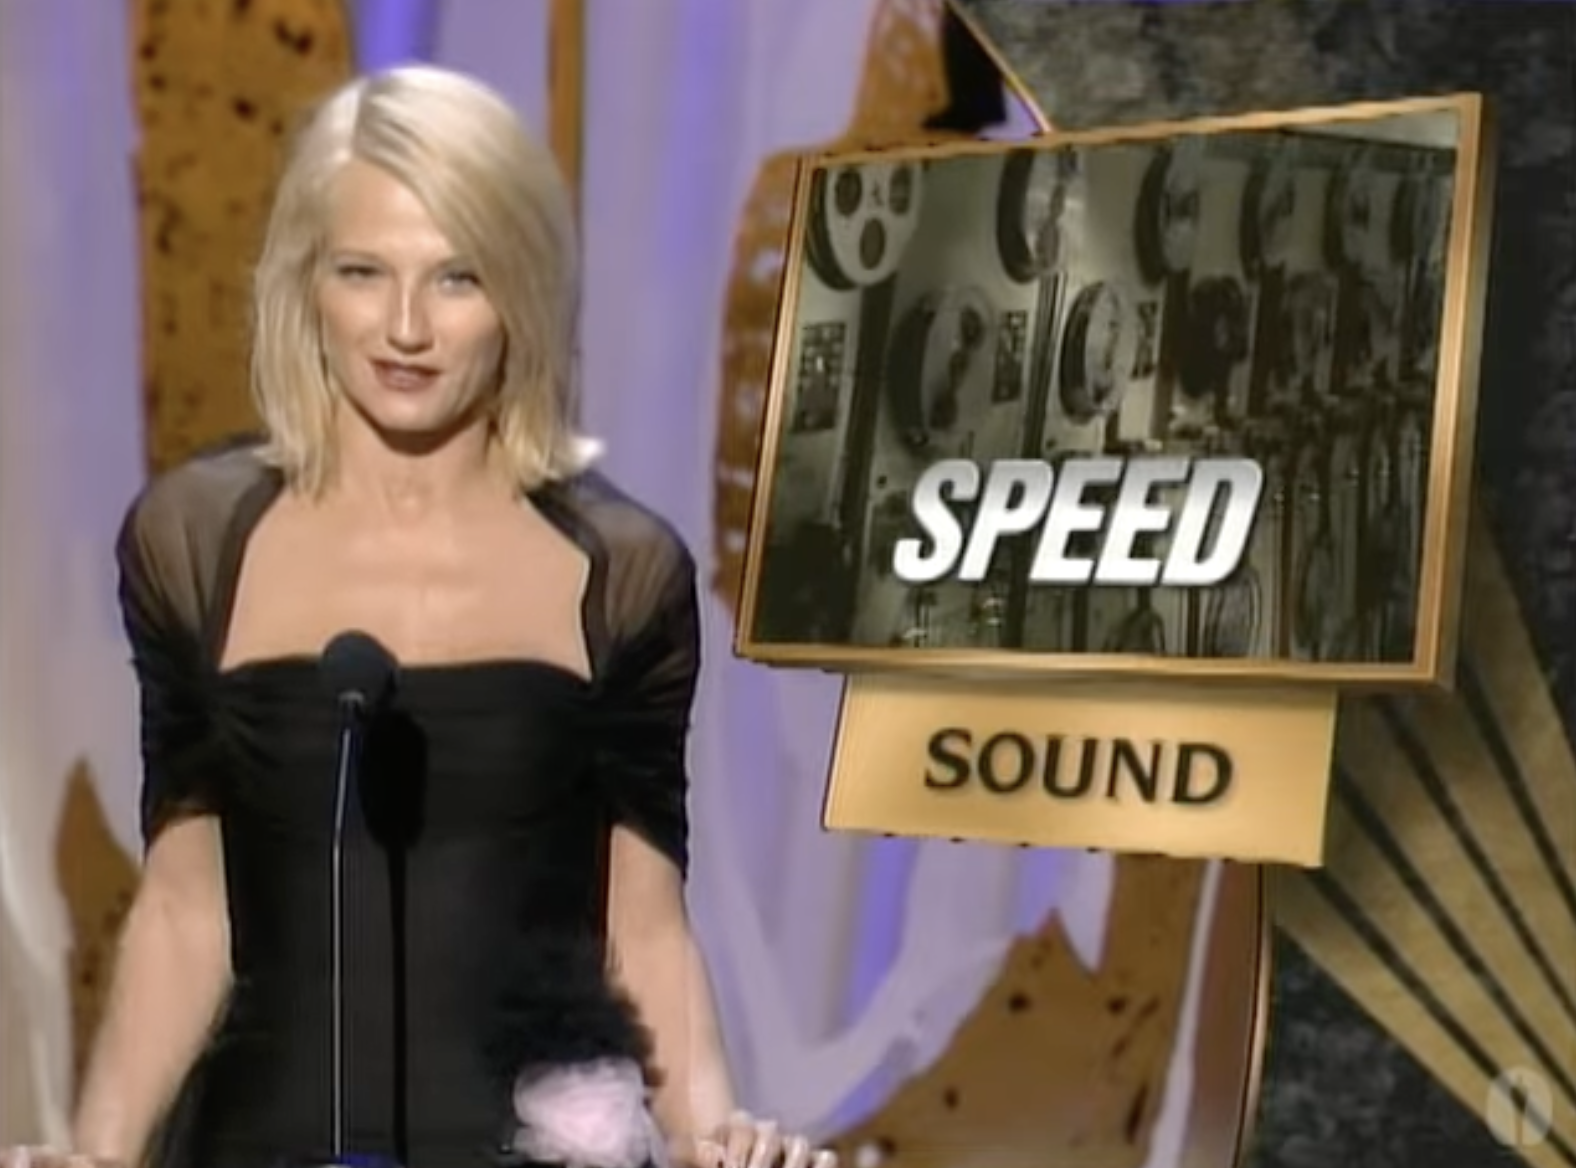 67th Academy Awards - Best Sound - Speed